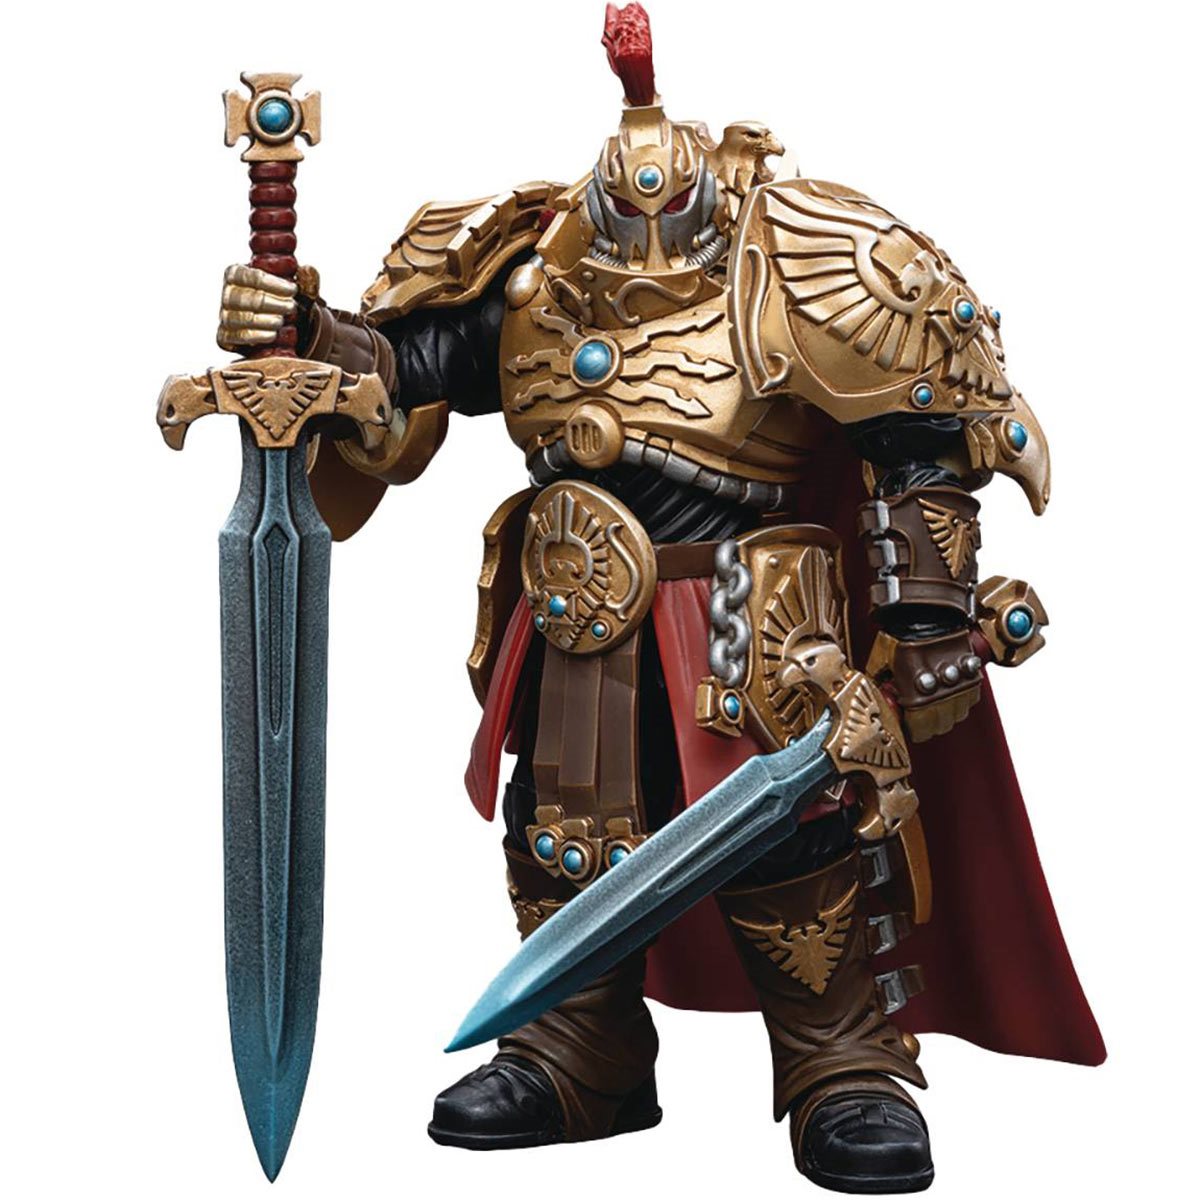 Figurine - Warhammer 40k figurine 1/18 Adeptus Custodes Custo